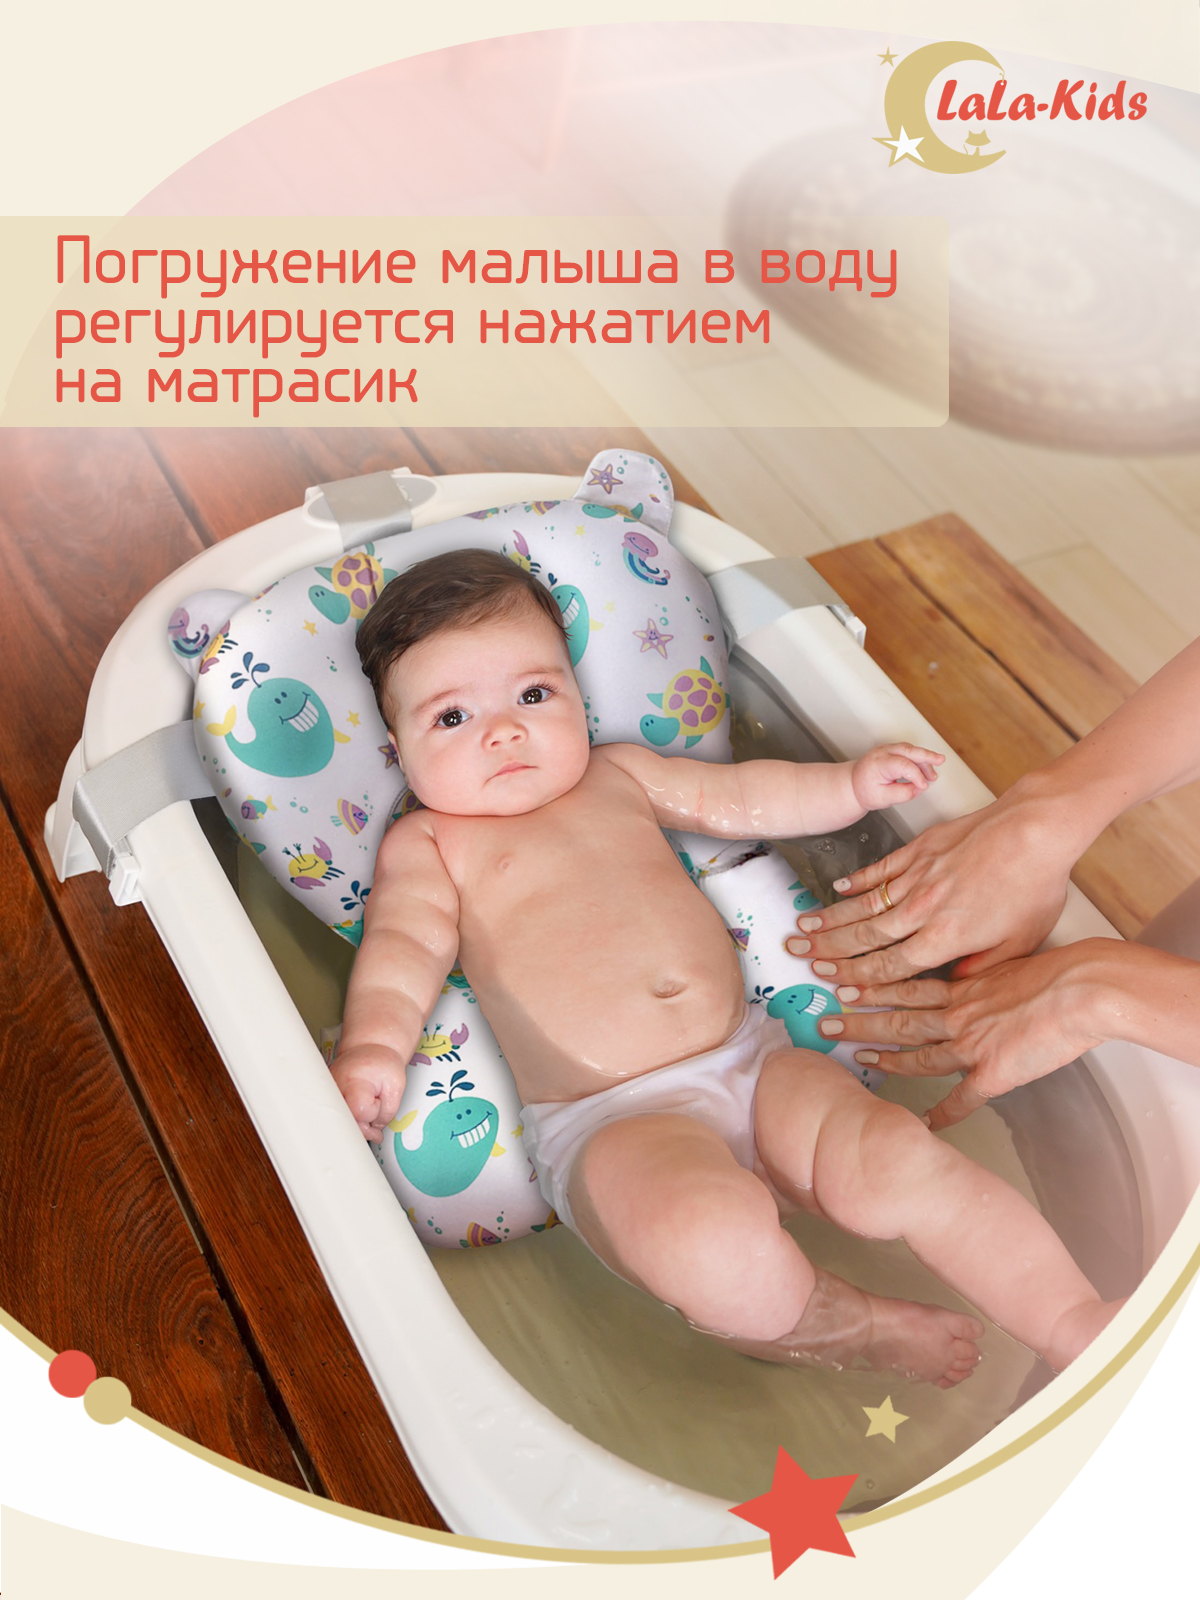 Детская ванночка с термометром LaLa-Kids складная с матрасиком для купания новорожденных - фото 18